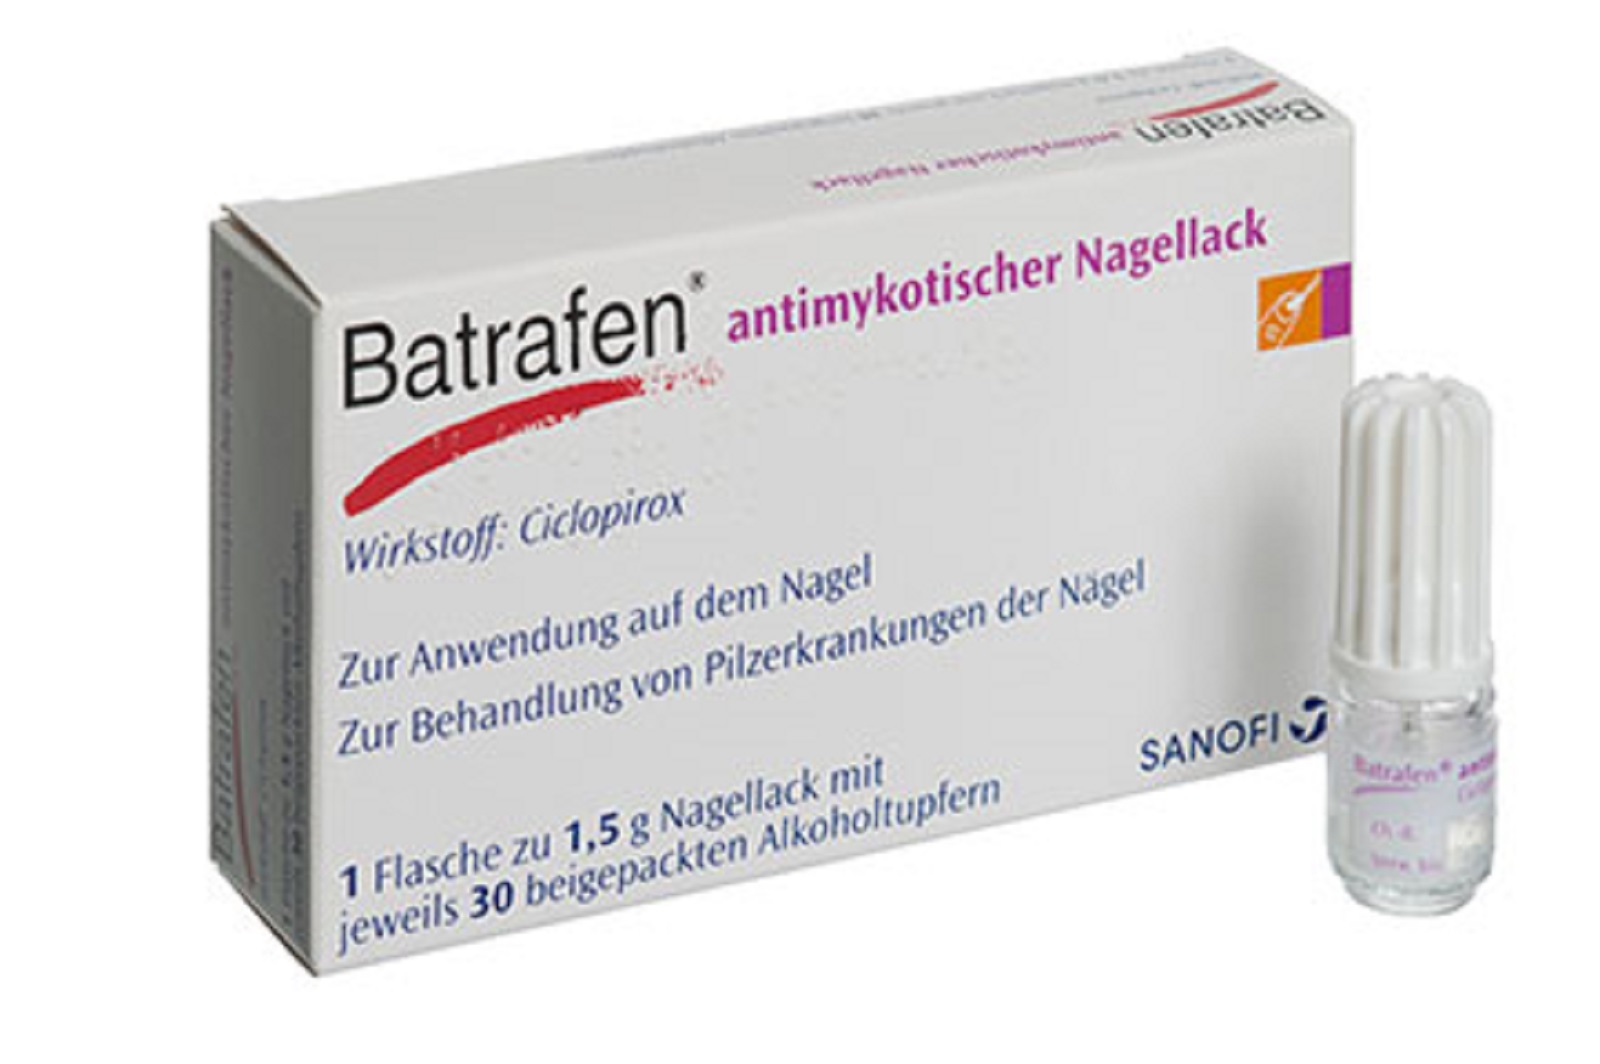 Batrafen - antimykotischer Nagellack